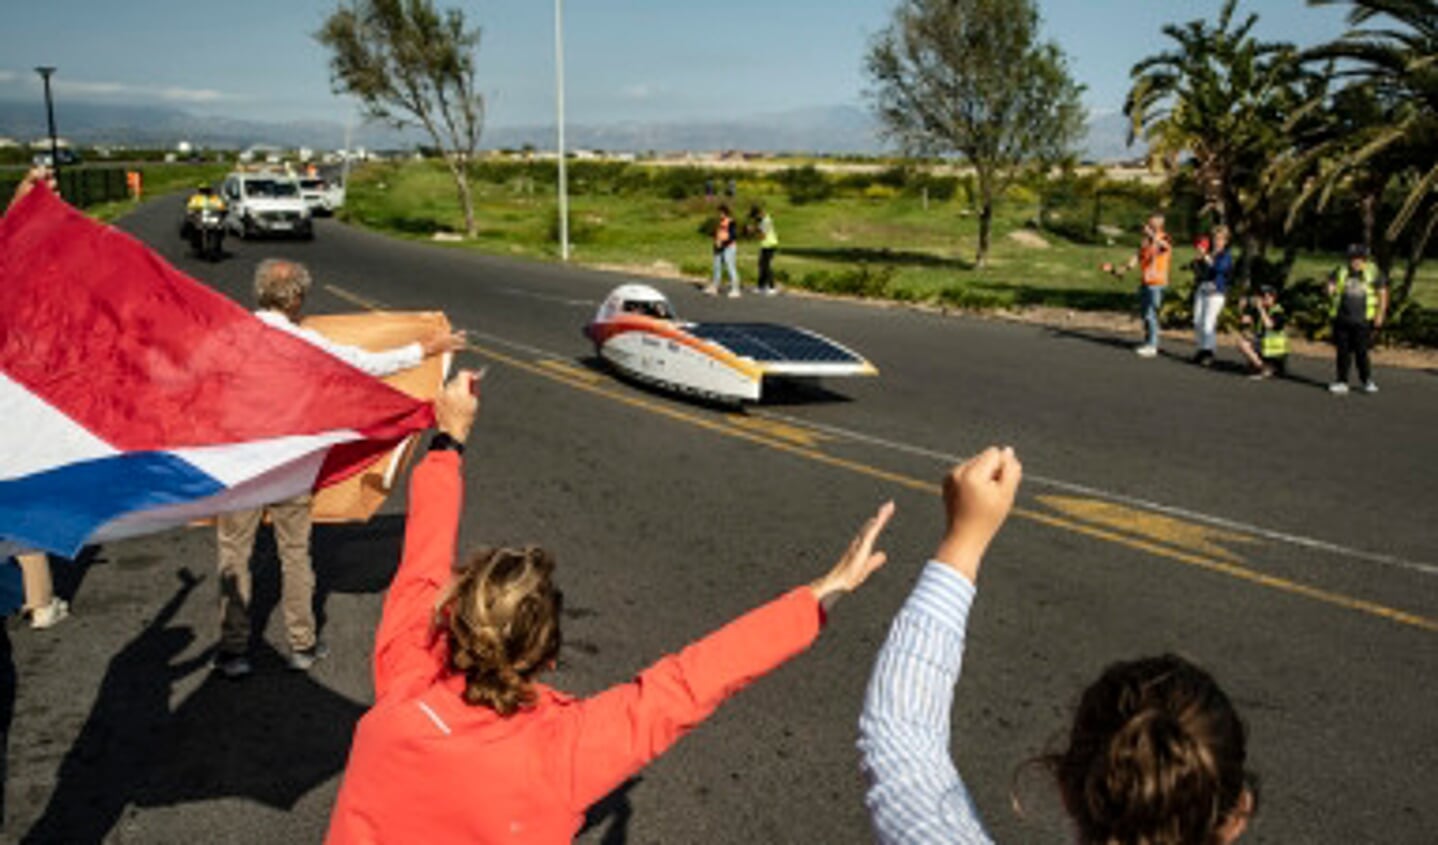  Lars van Keulen en zijn team winnen de Sasol Solar Challenge in Zuid-Afrika.